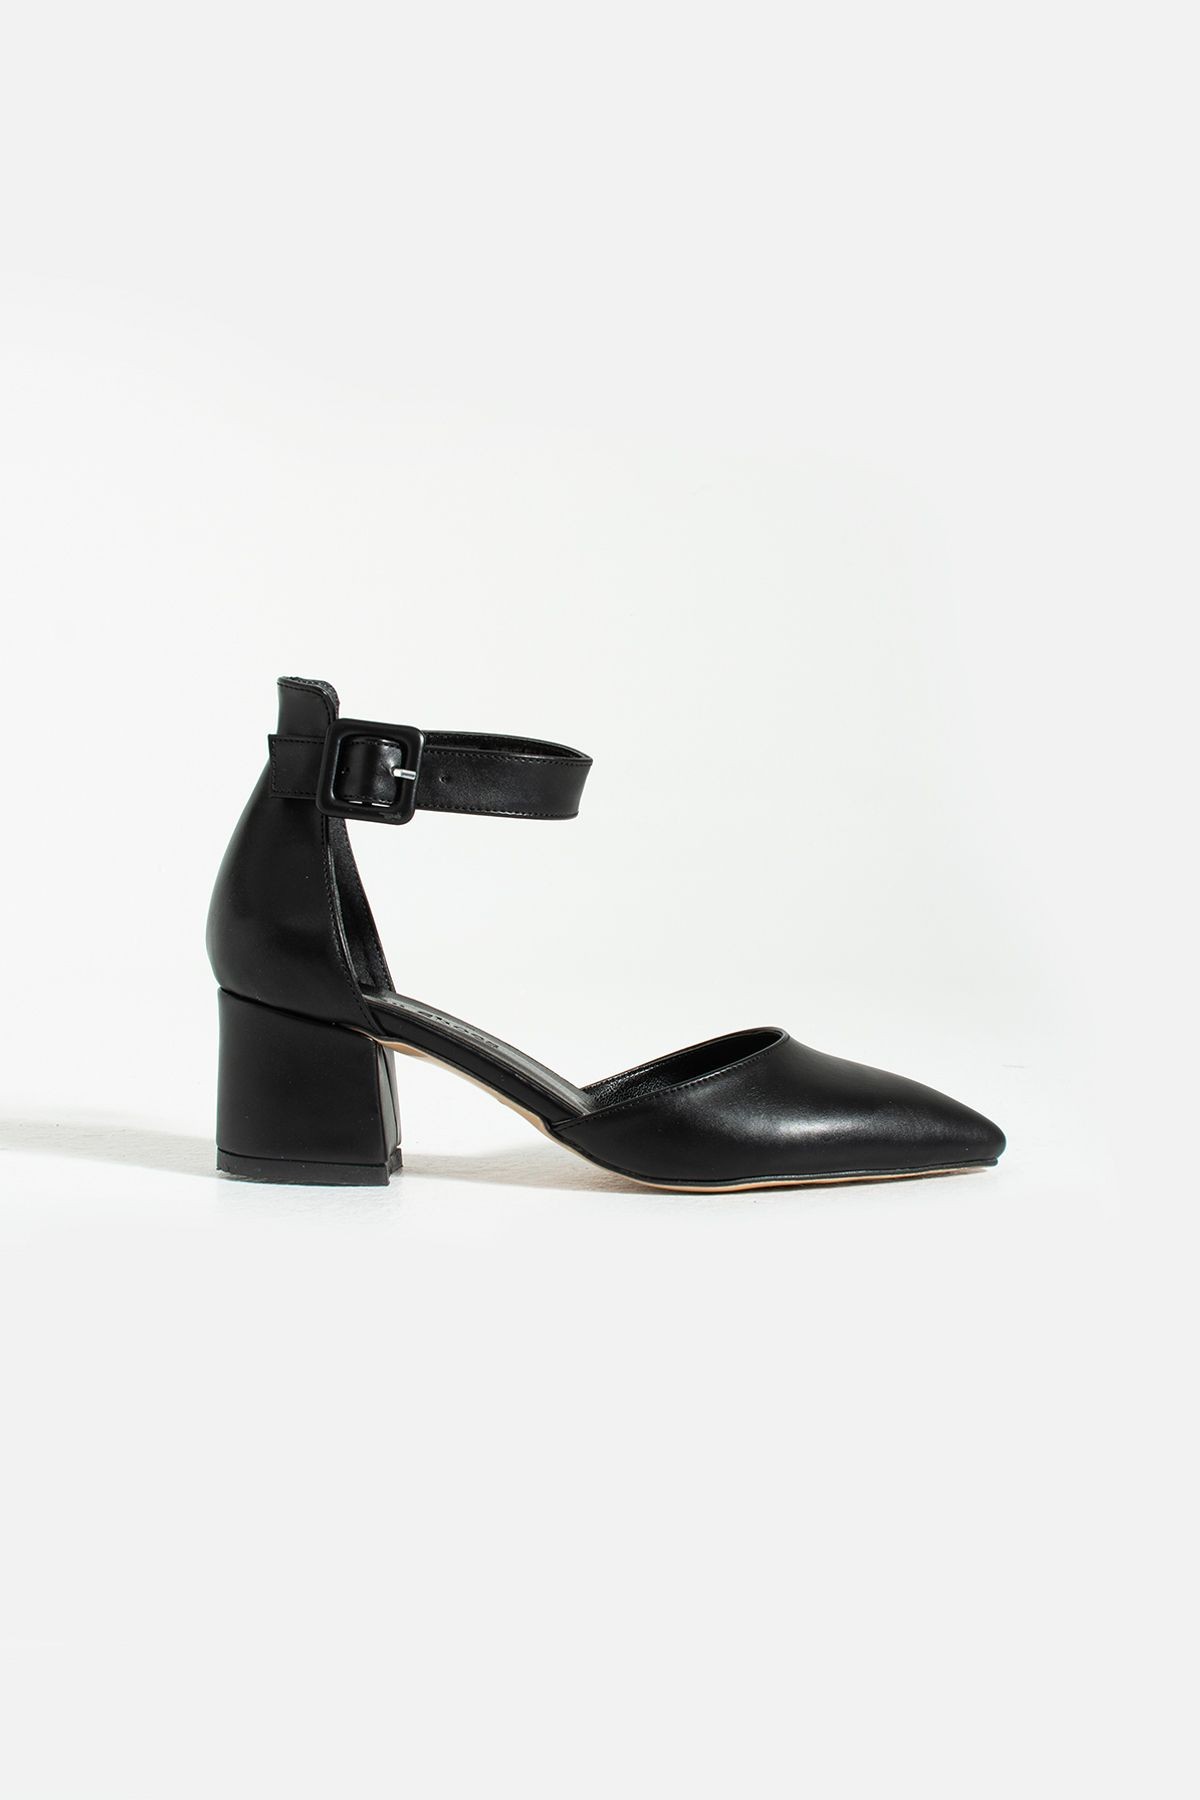 Kadin Yazlık Abiye Stiletto Kalın Topuklu Ayakkabi 5.5cm